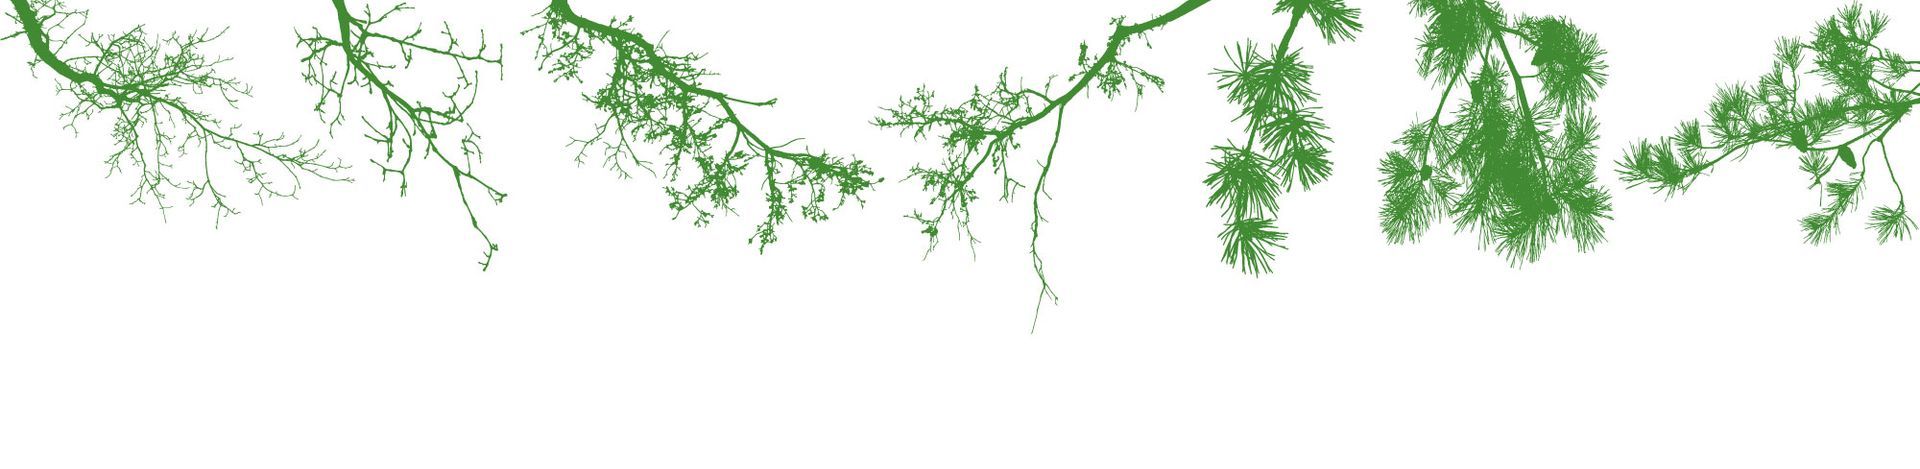 Zweige eines Baumes mit grünen Blättern auf weißem Hintergrund  - Traumgärten Benjamin Biermeyer aus Soest